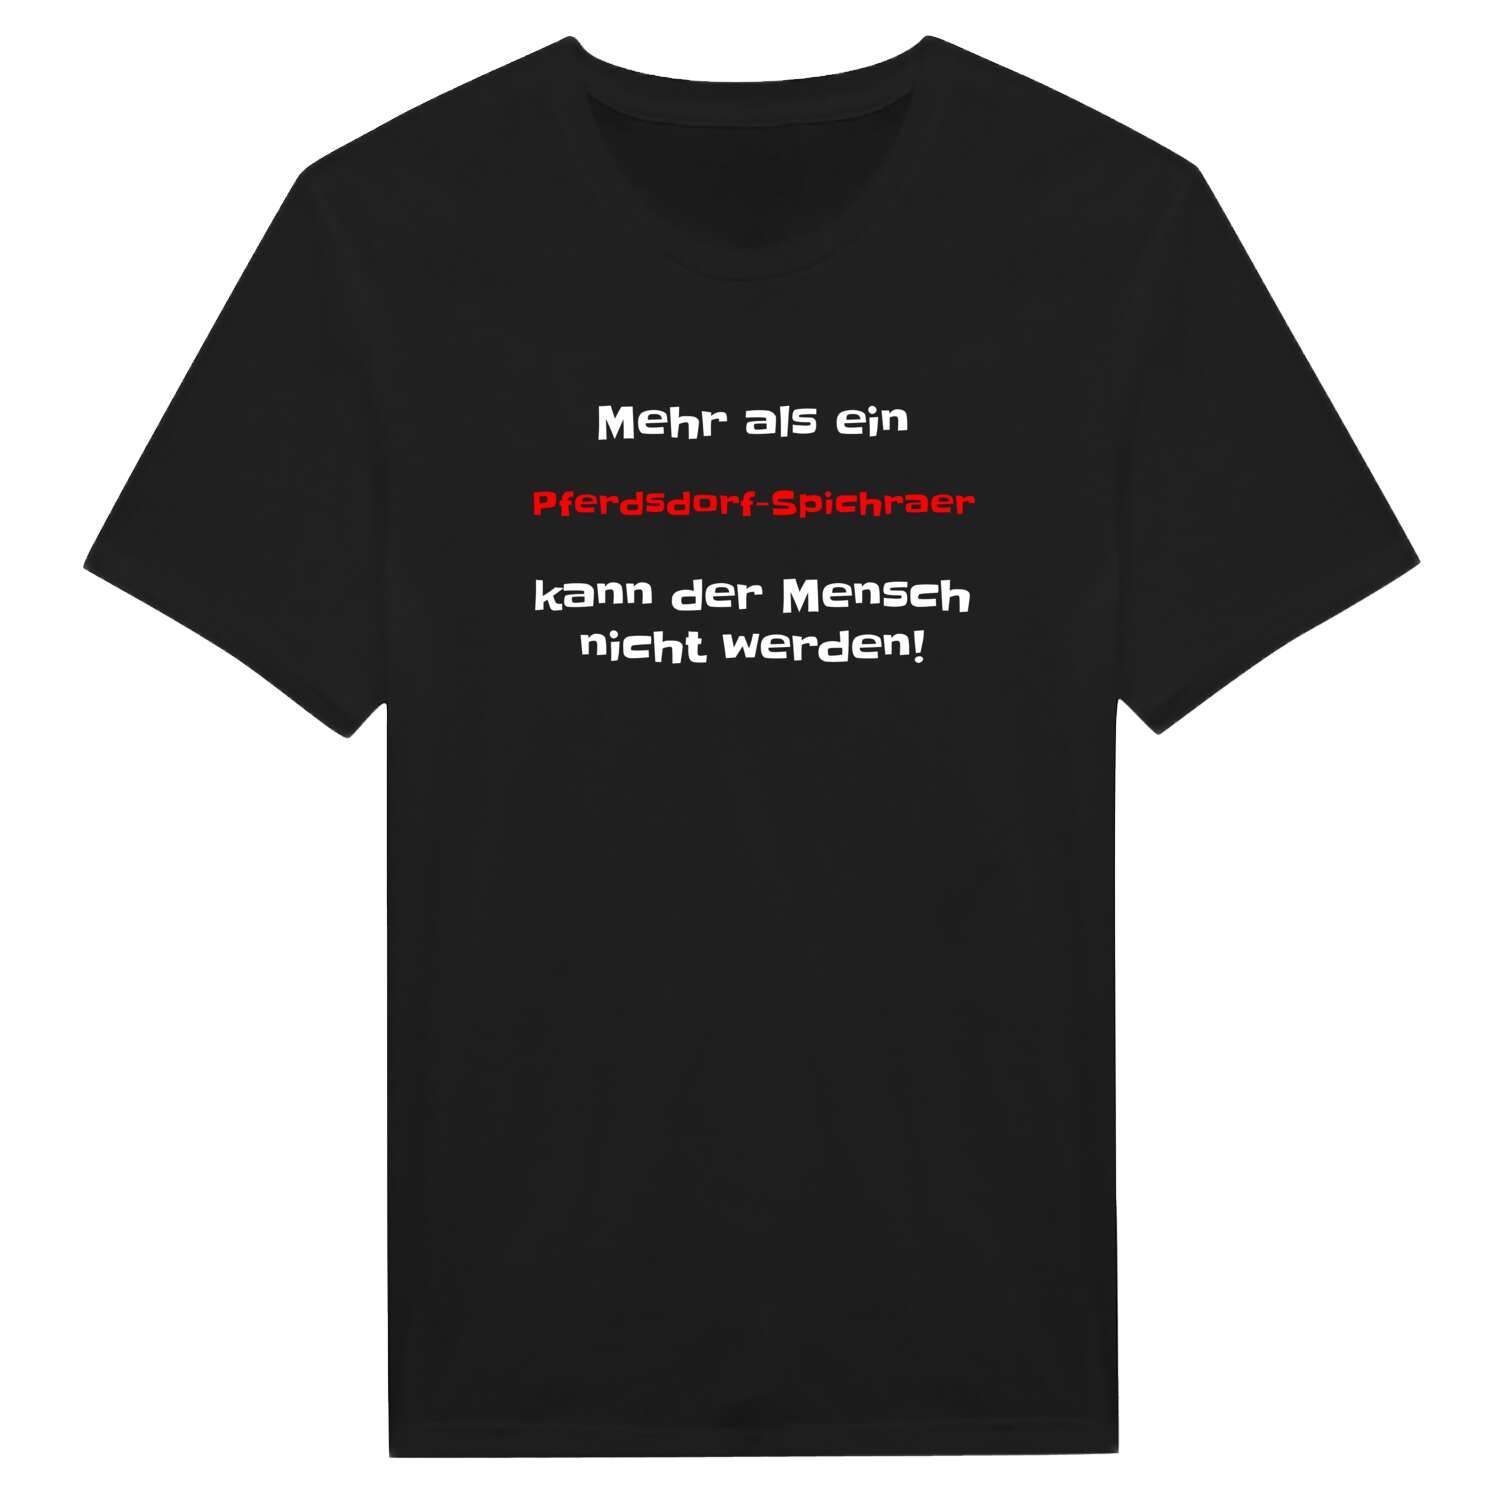 Pferdsdorf-Spichra T-Shirt »Mehr als ein«